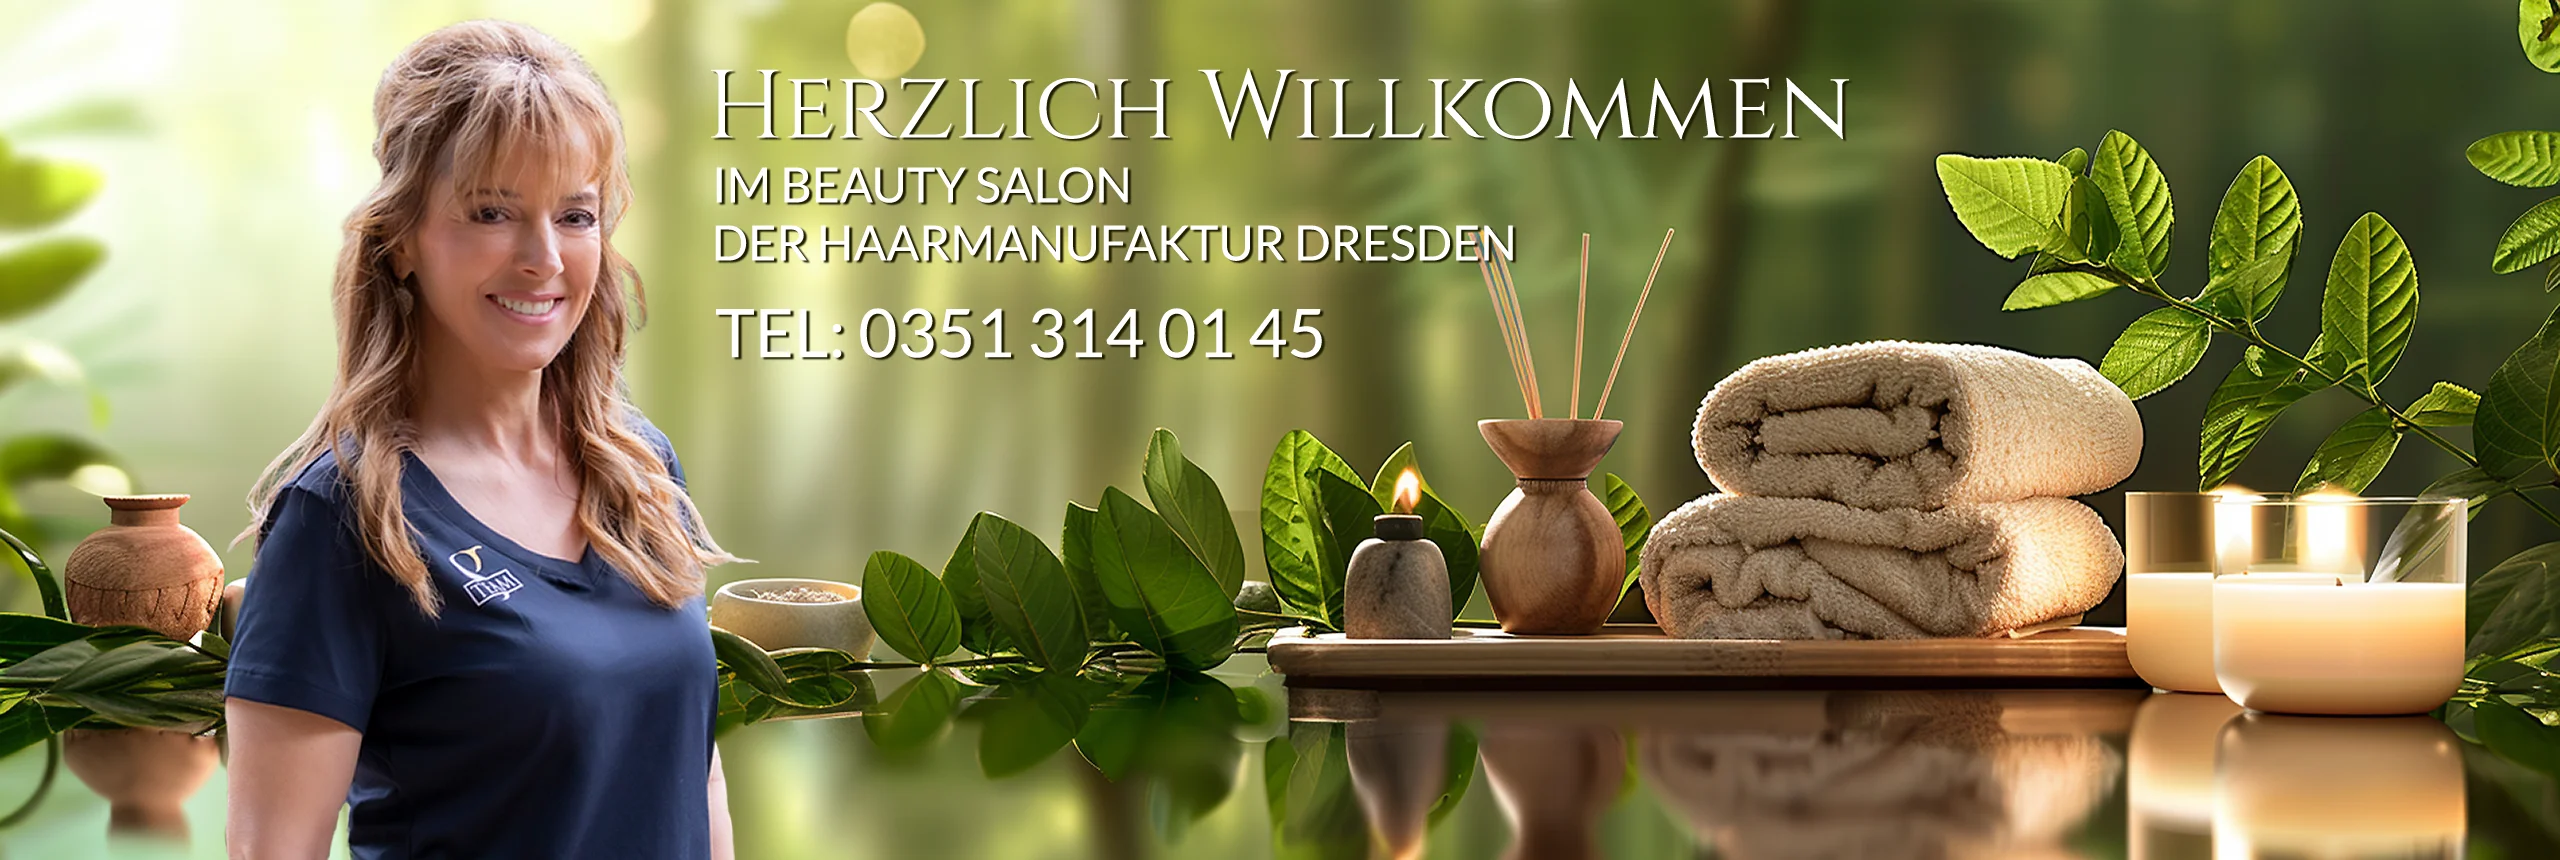 Herzlich Willkommen im Beauty Salon der Haarmanufaktur Dresden